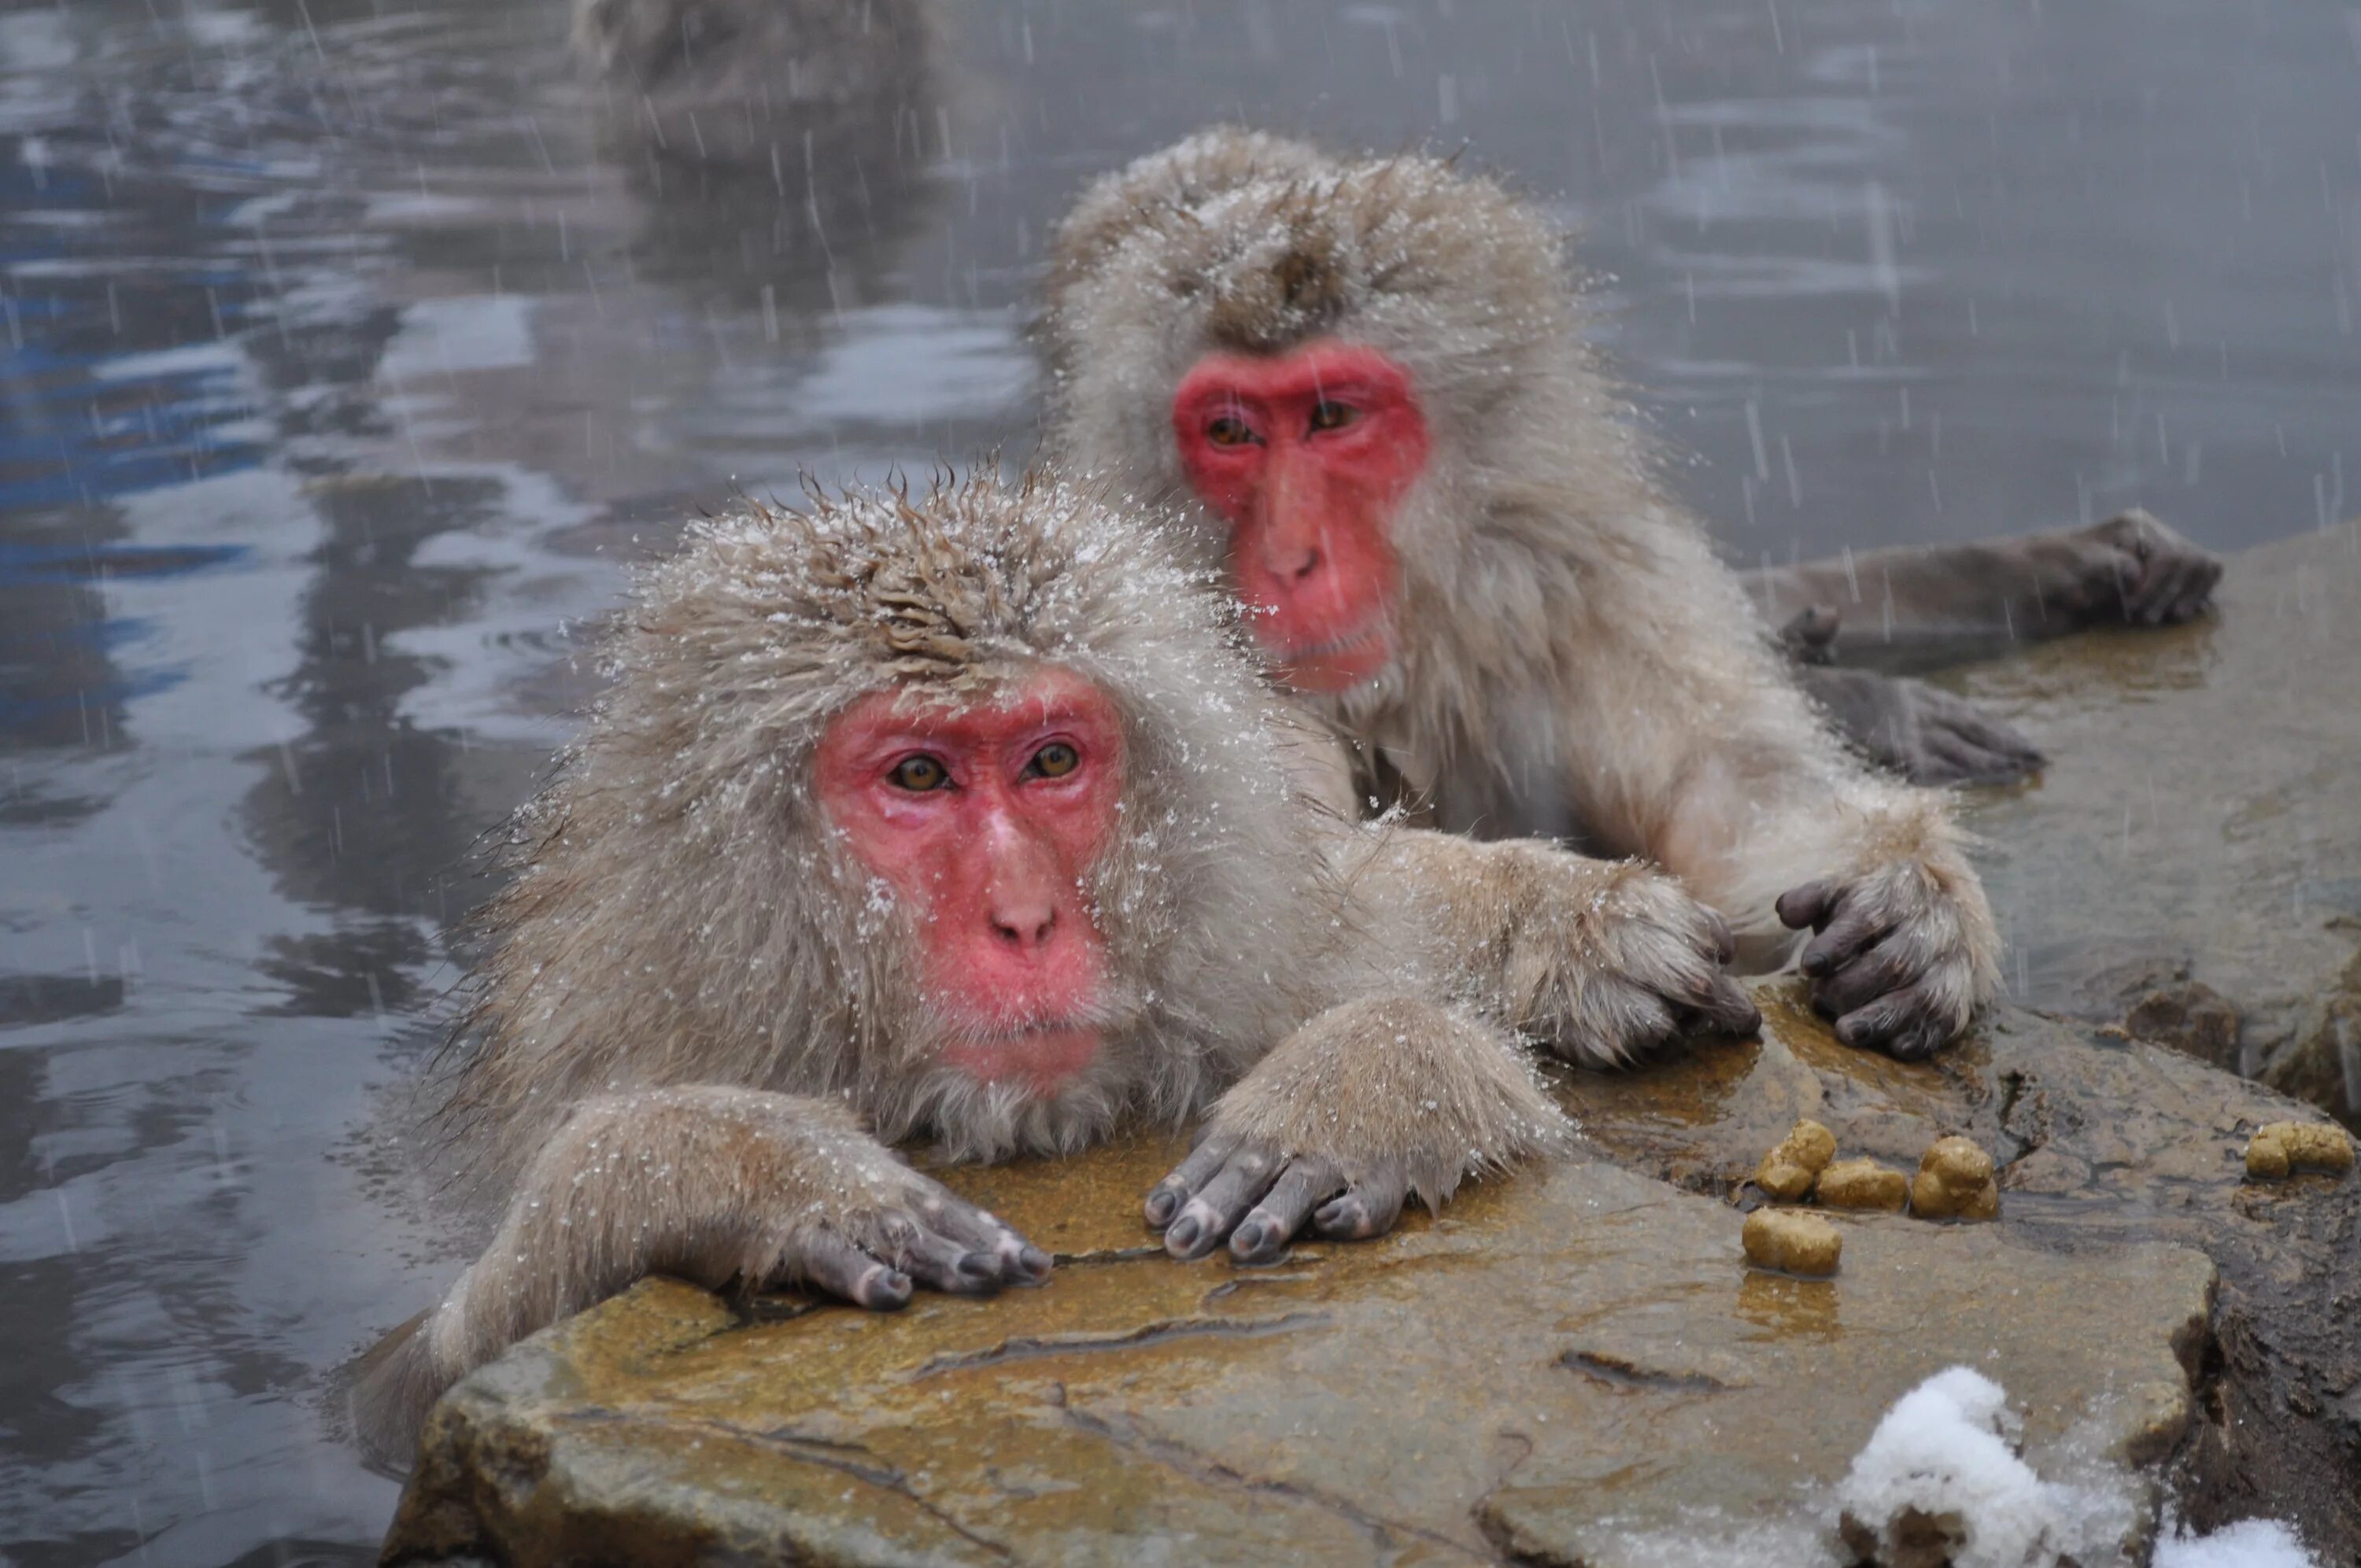 Обезьяна купается в теплой воде группа. Обезьяны в Японии в горячих источниках. Парк обезьян Дзигокудани. Японские макаки в горячих источниках зимой. Снежные обезьяны в горячих источниках Нагано.